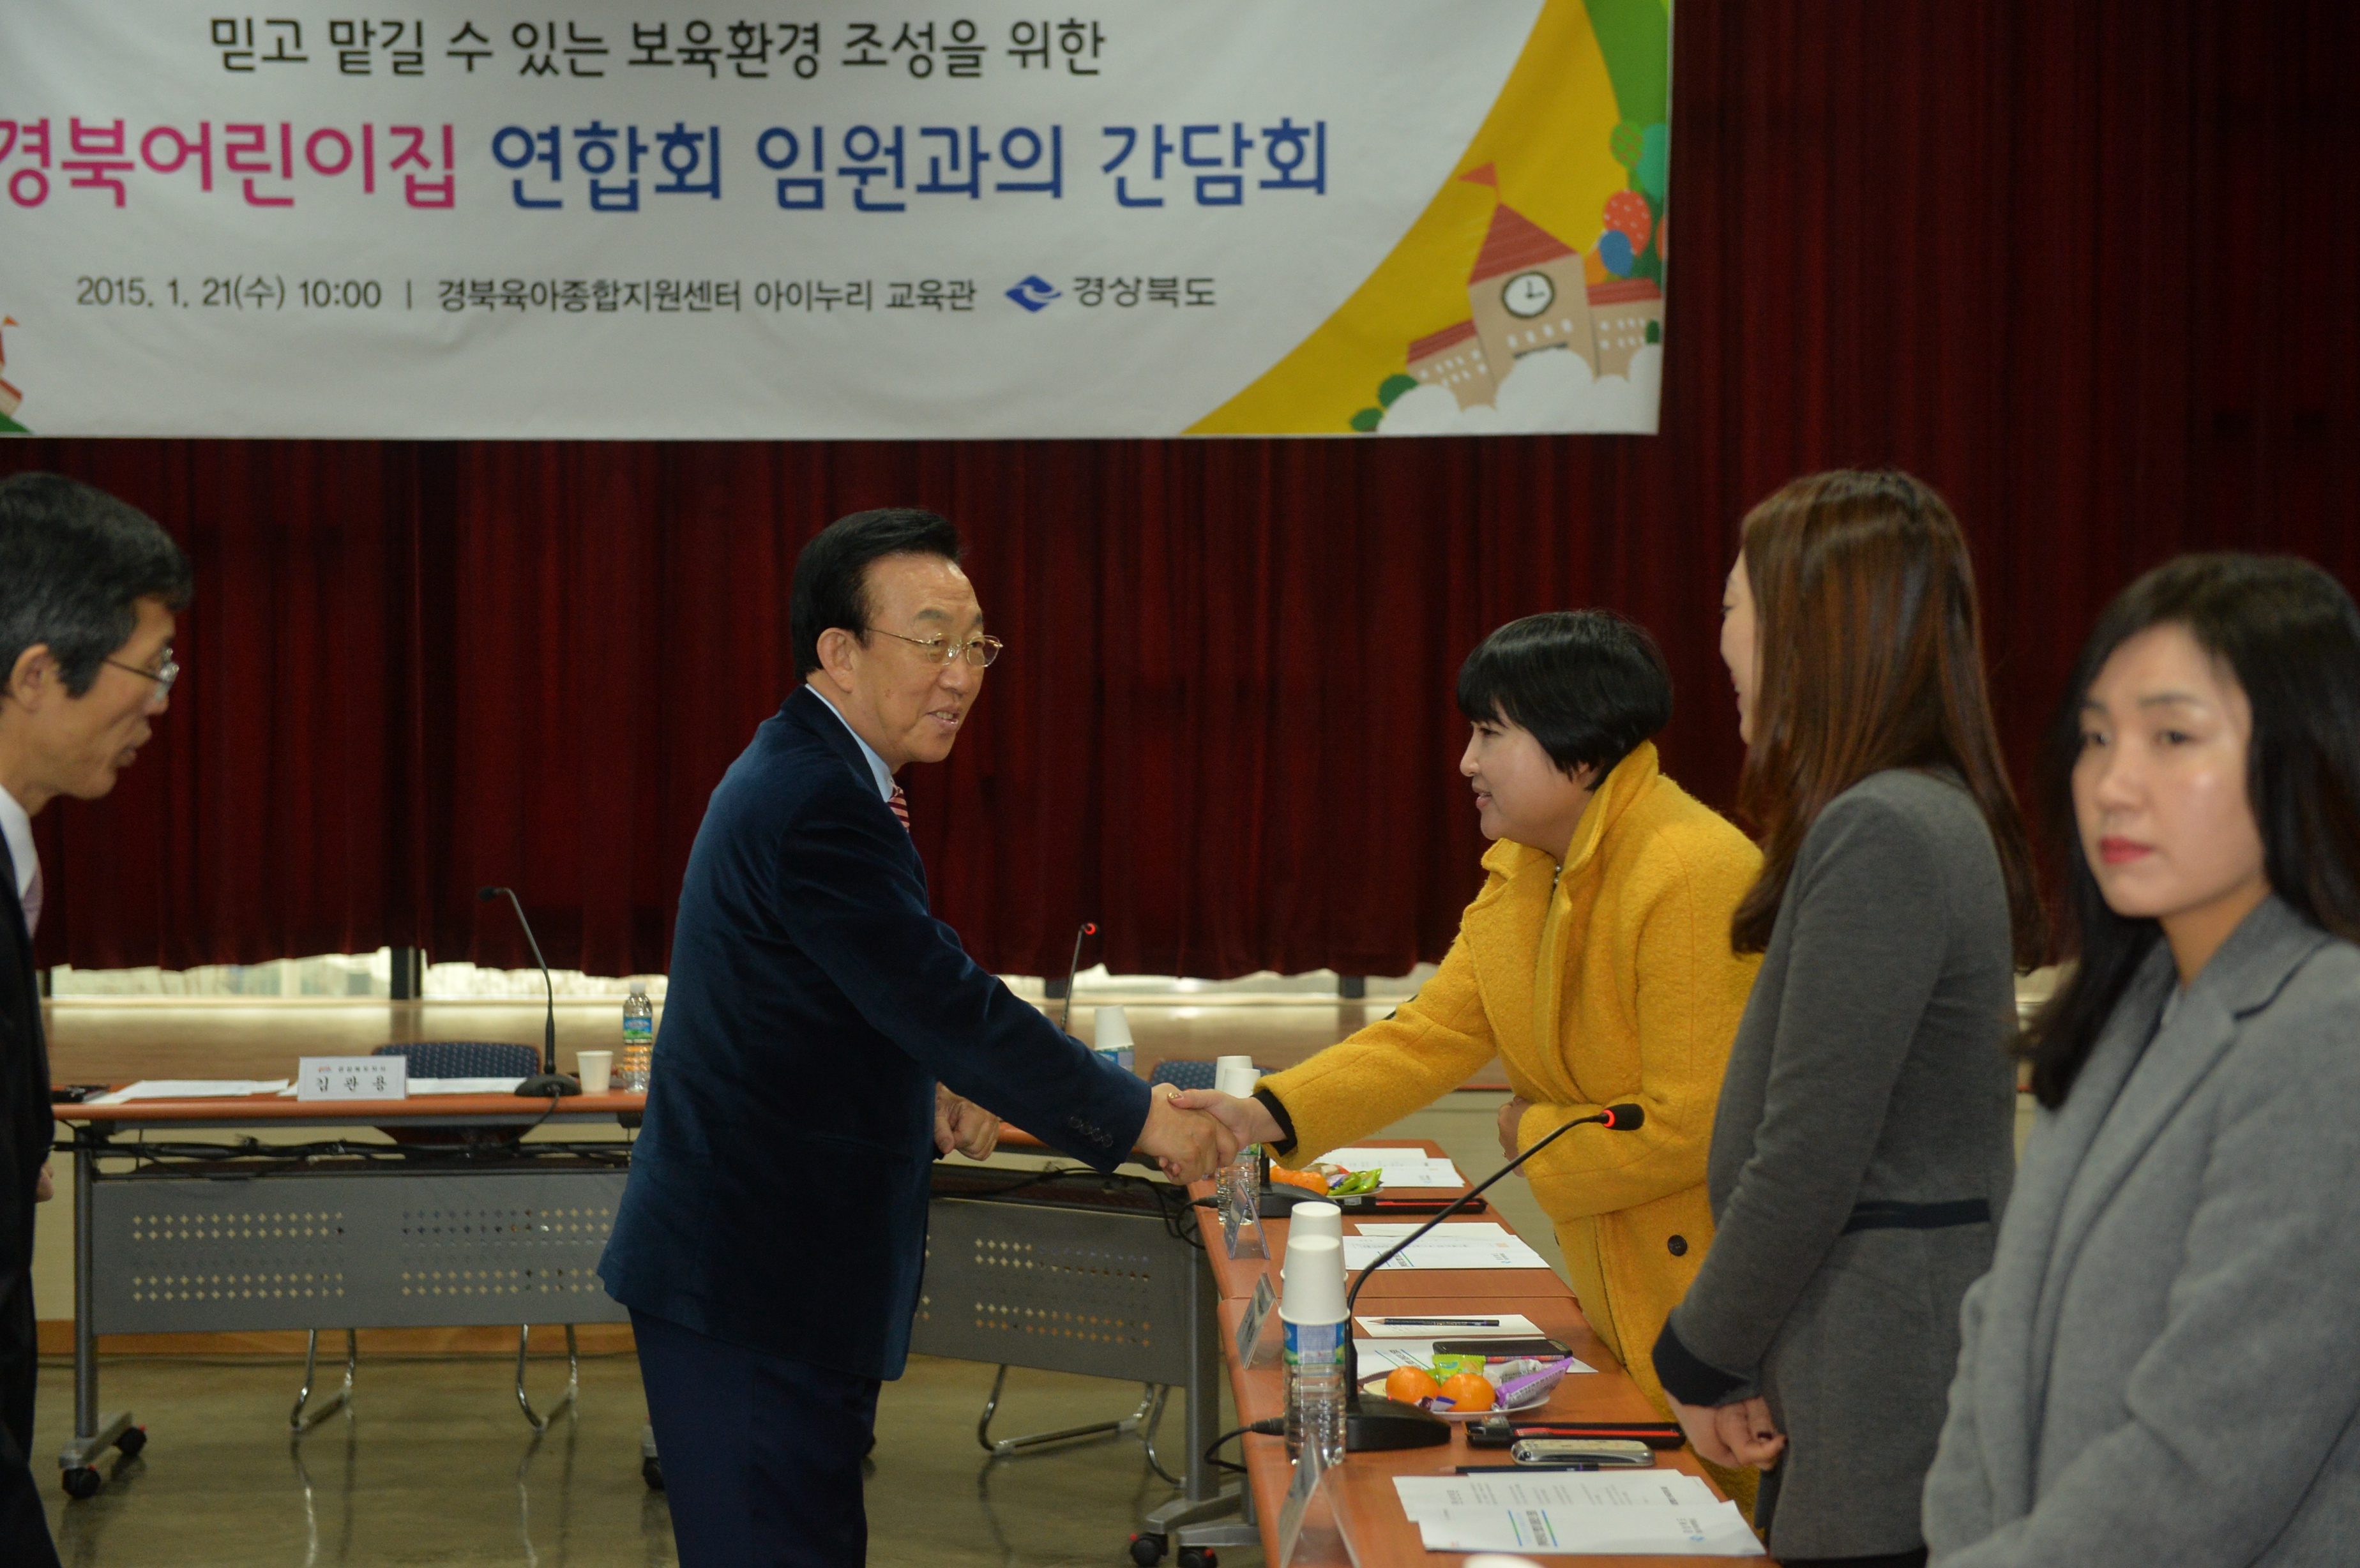 20150121 경북어린이집연합회 간담회 및 현장방문